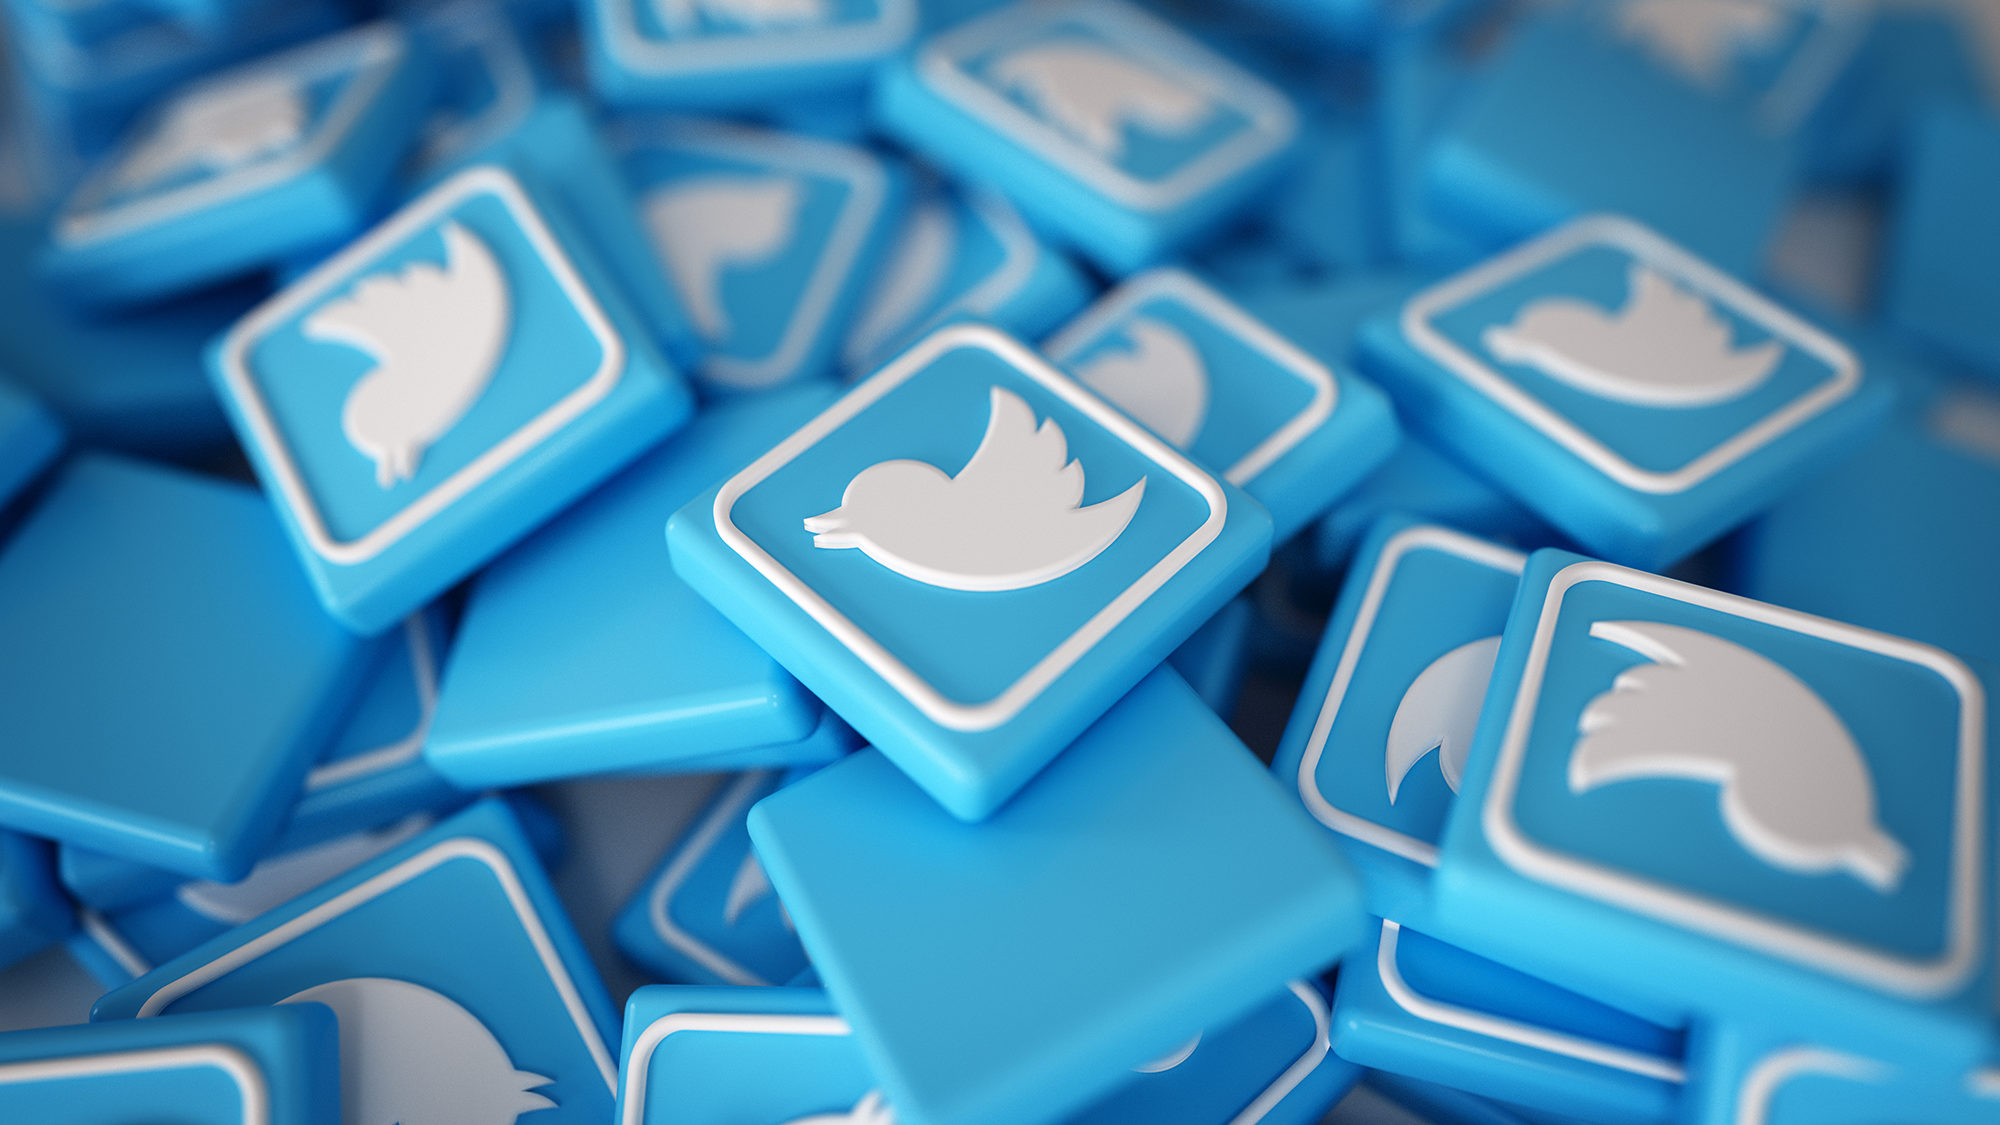 #twitterdown twitter badges shown...